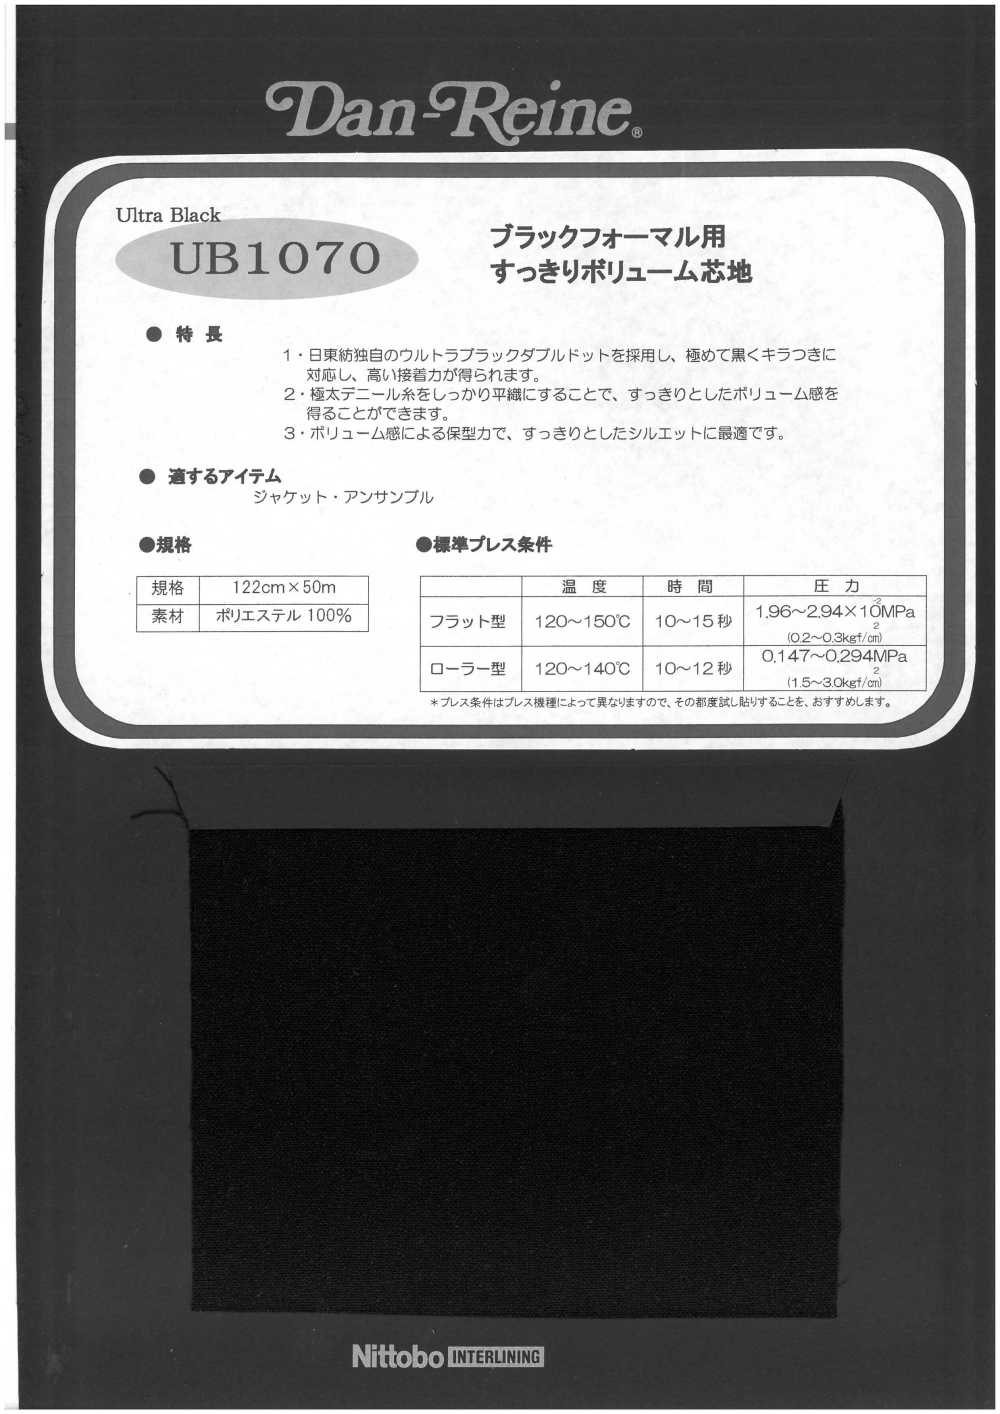 UB1070 블랙 포멀 용 깨끗이 볼륨 심지 닛토보 (닛토보인터라이닝)